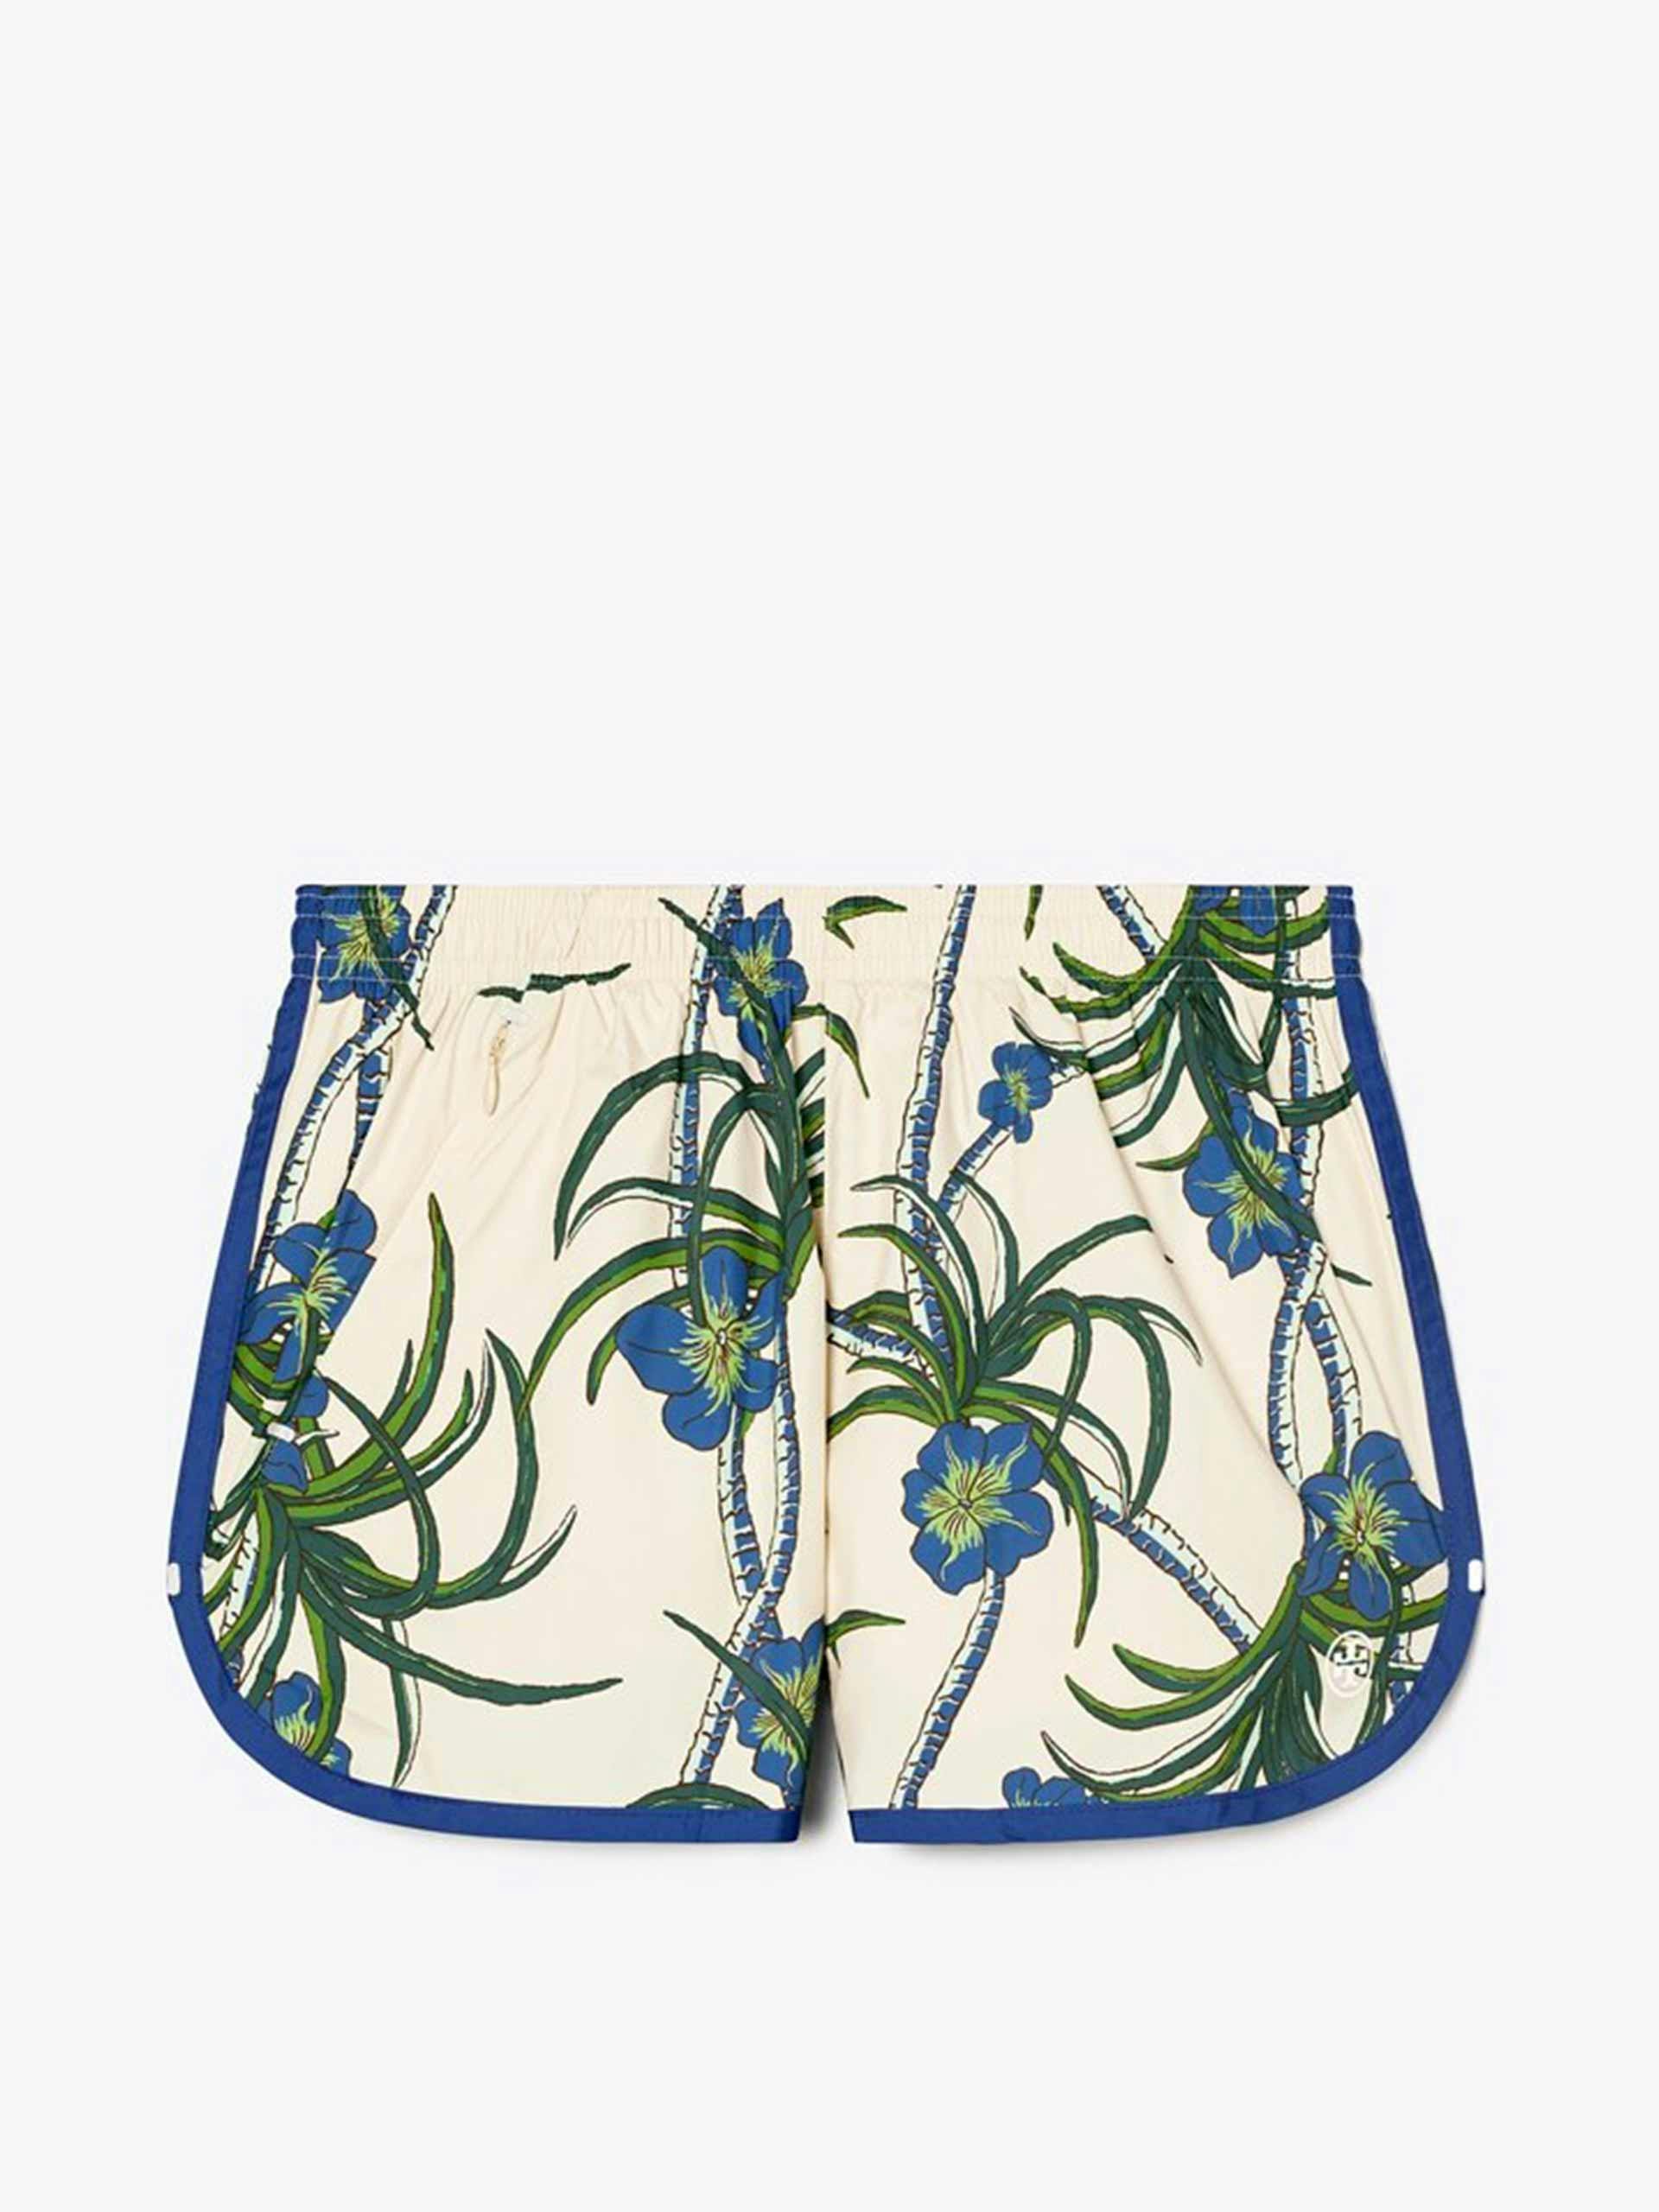 Blue and green printed nylon shorts